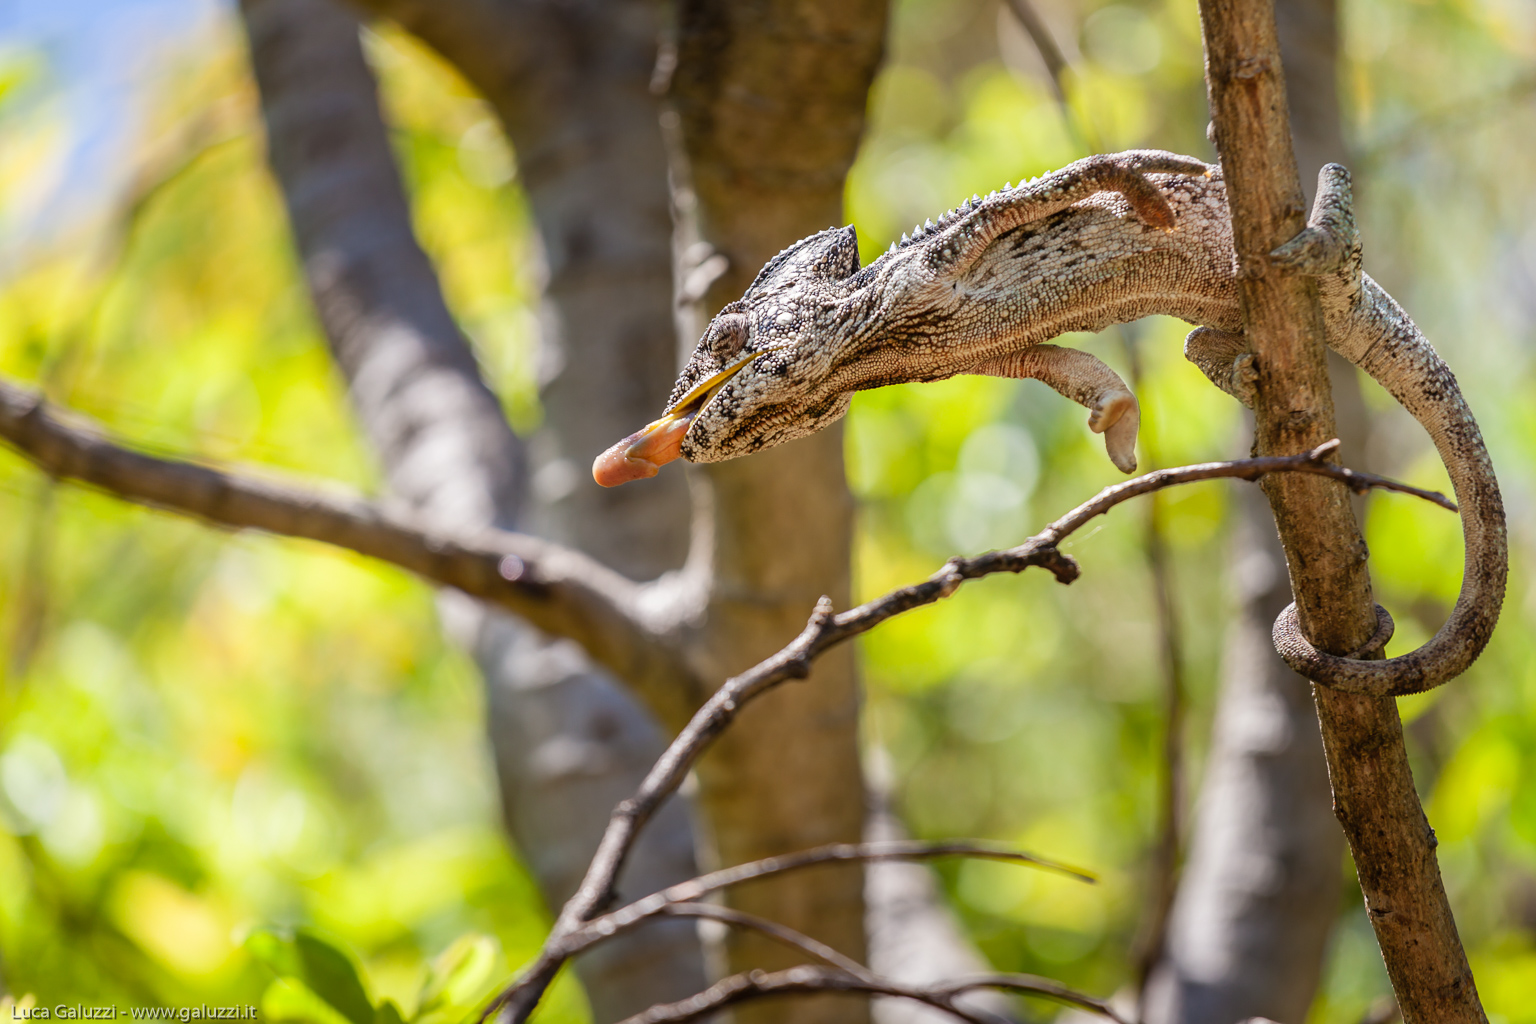 La lingua dei camaleonti, a forma di clava e coperta da una secrezione appiccicosa, può essere catapultata all'esterno con la precisione di una catapulta